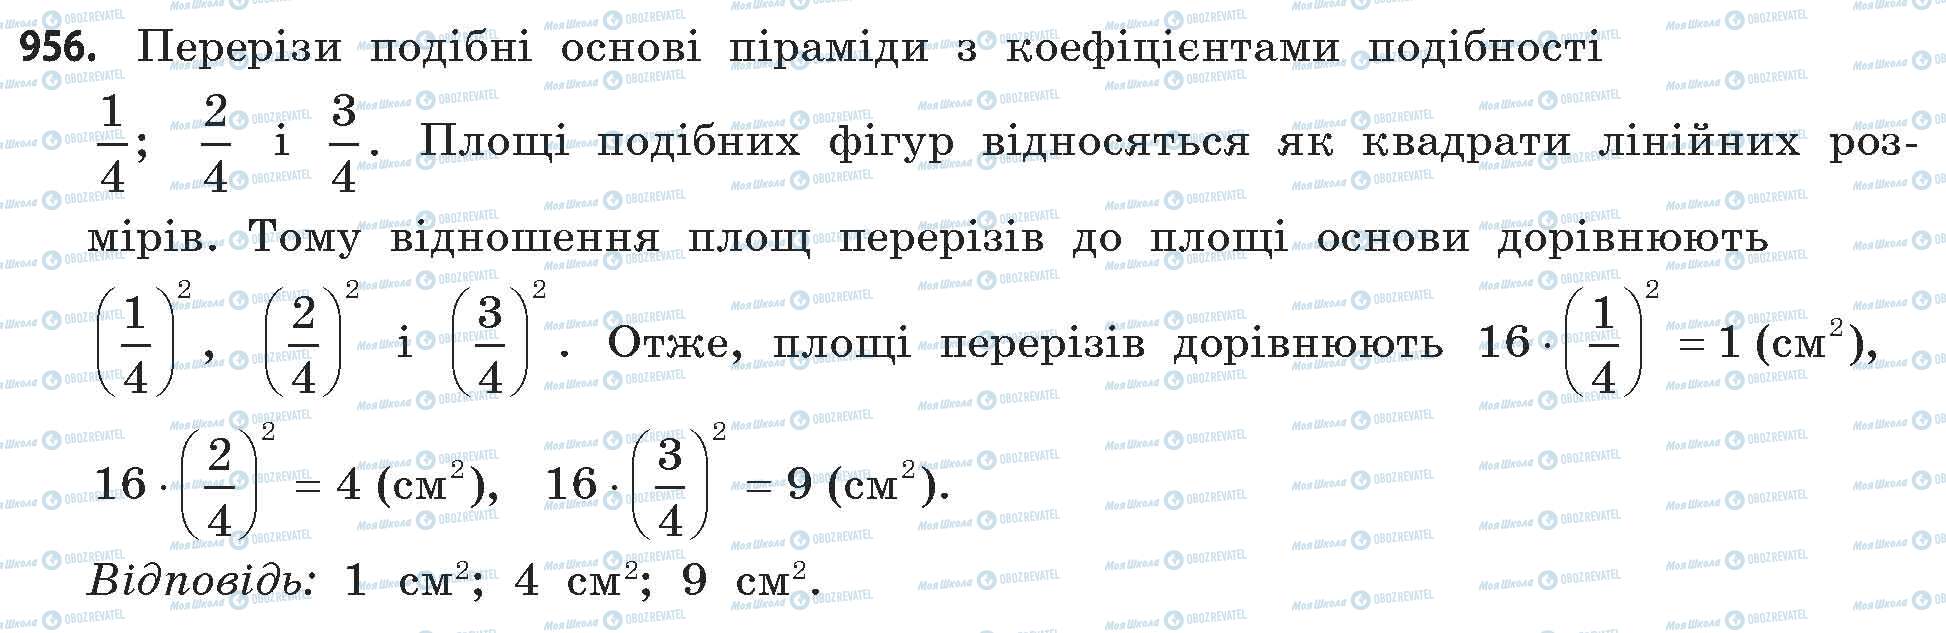 ГДЗ Математика 11 класс страница 956